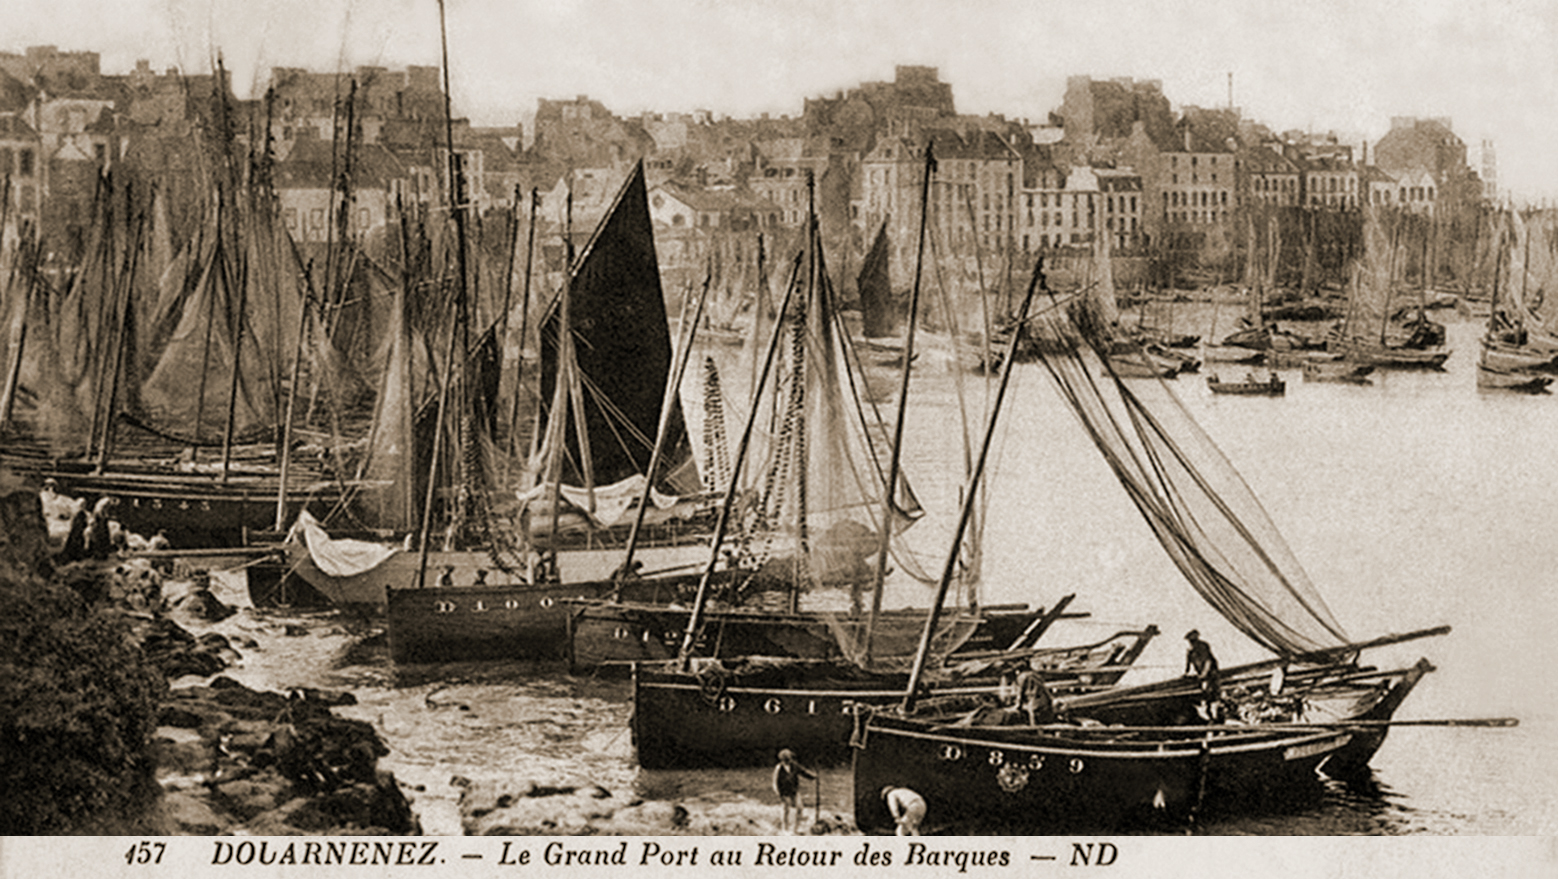 Source : Collection cartes postales ND, n° 157 - La chaloupe D 122 "Sainte-Hélène", la 3ème en partant du bas.